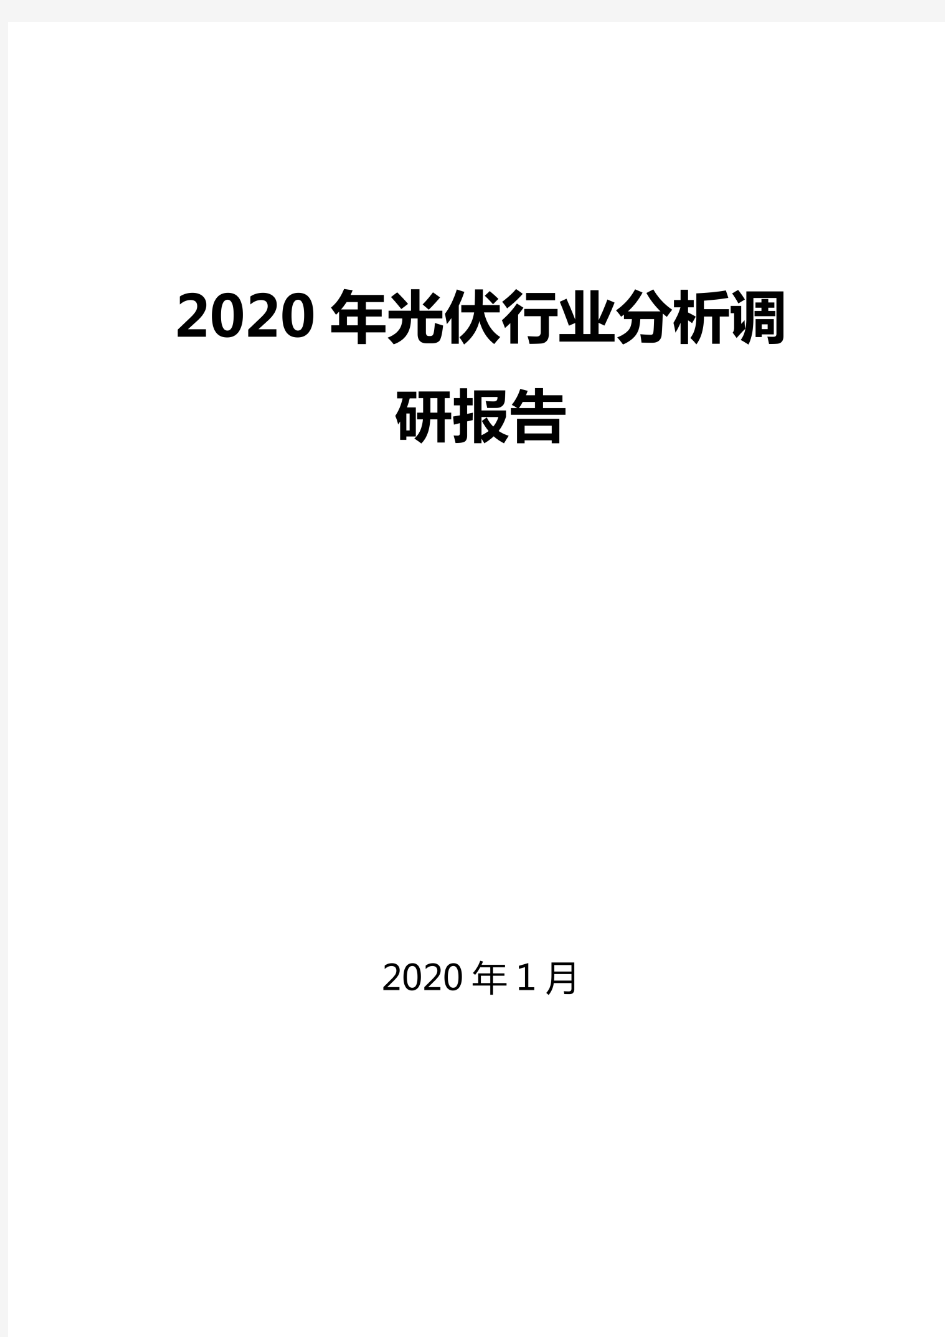 2020光伏行业分析报告